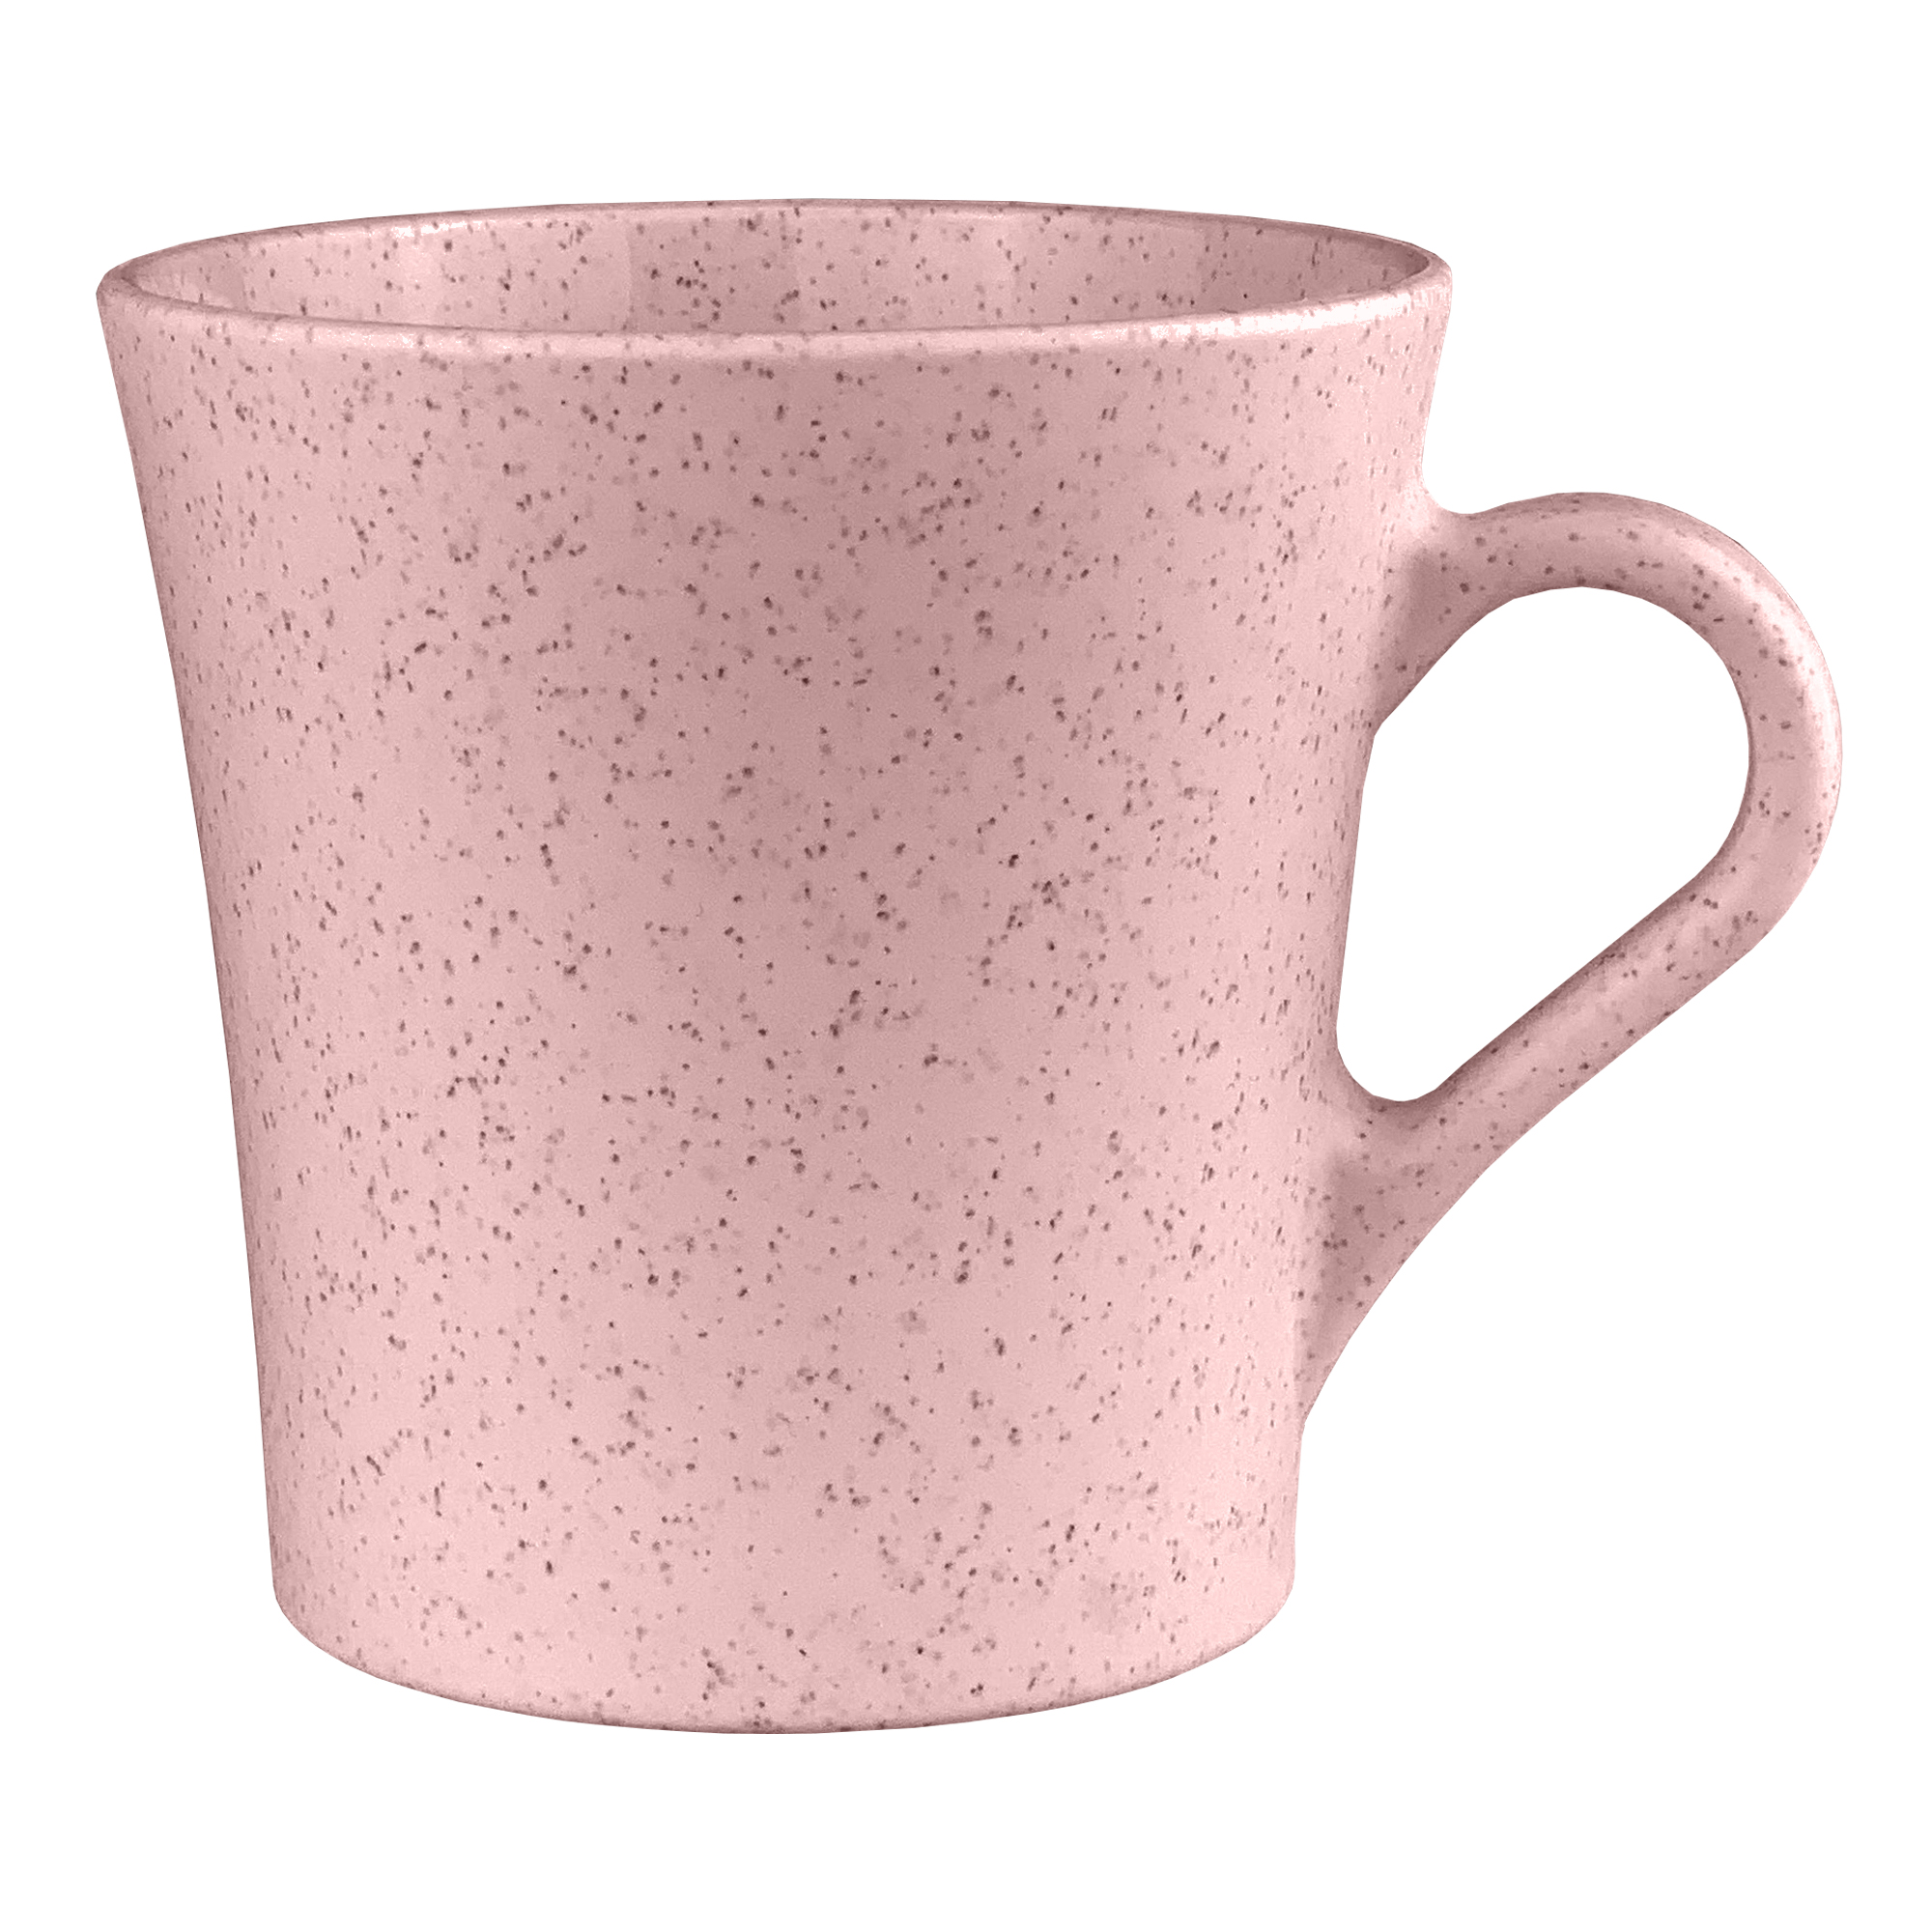 Lewis Wheat Straw Cup EK018 | Pink